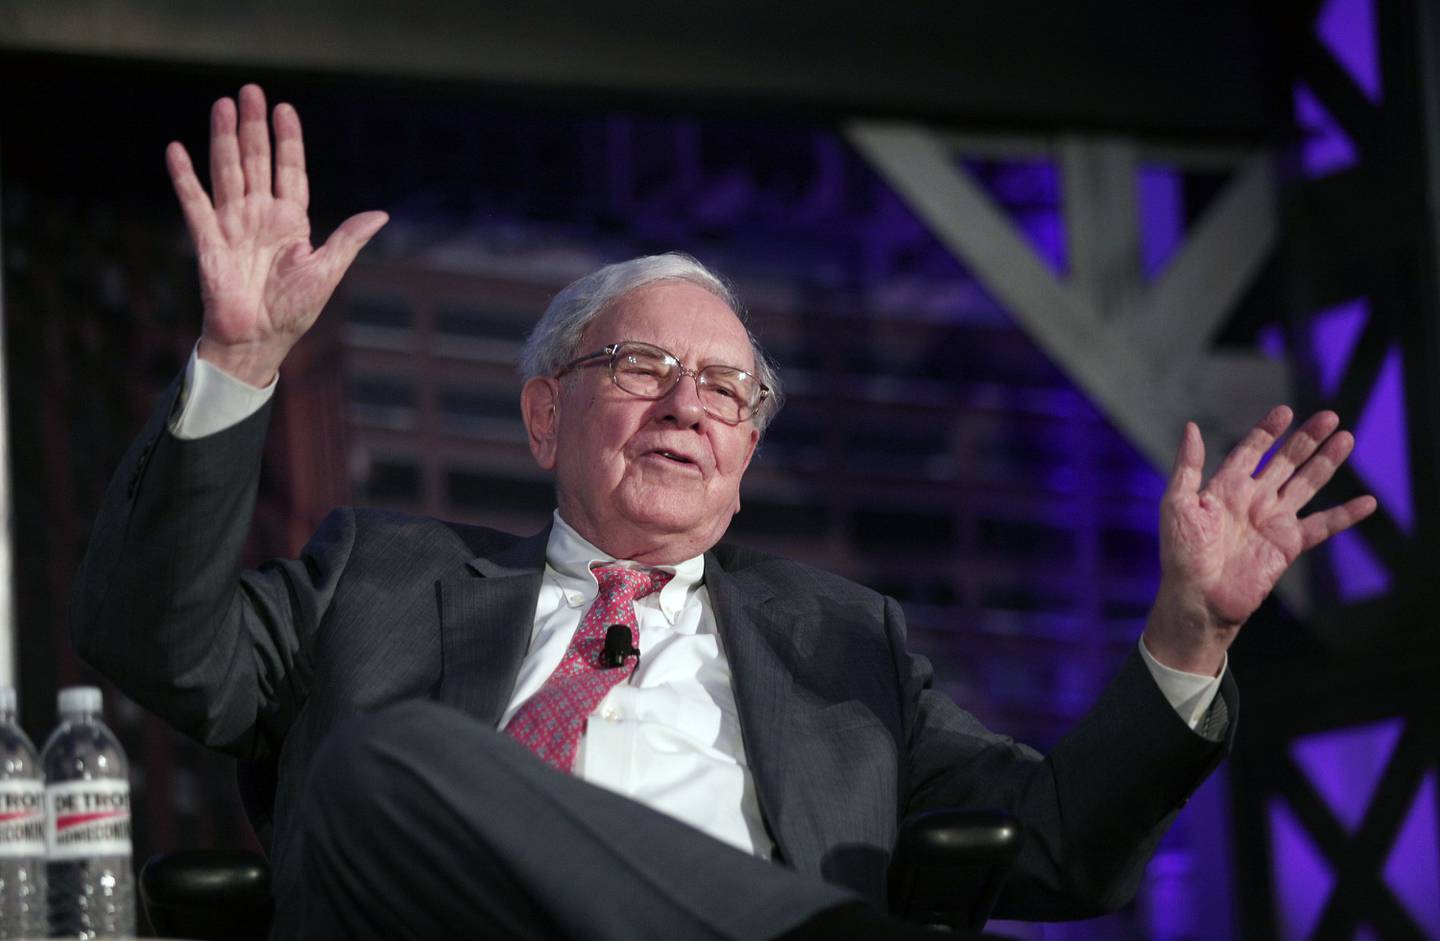 Buffet pode estar otimista com bancos - mas não com o Wells Fargo